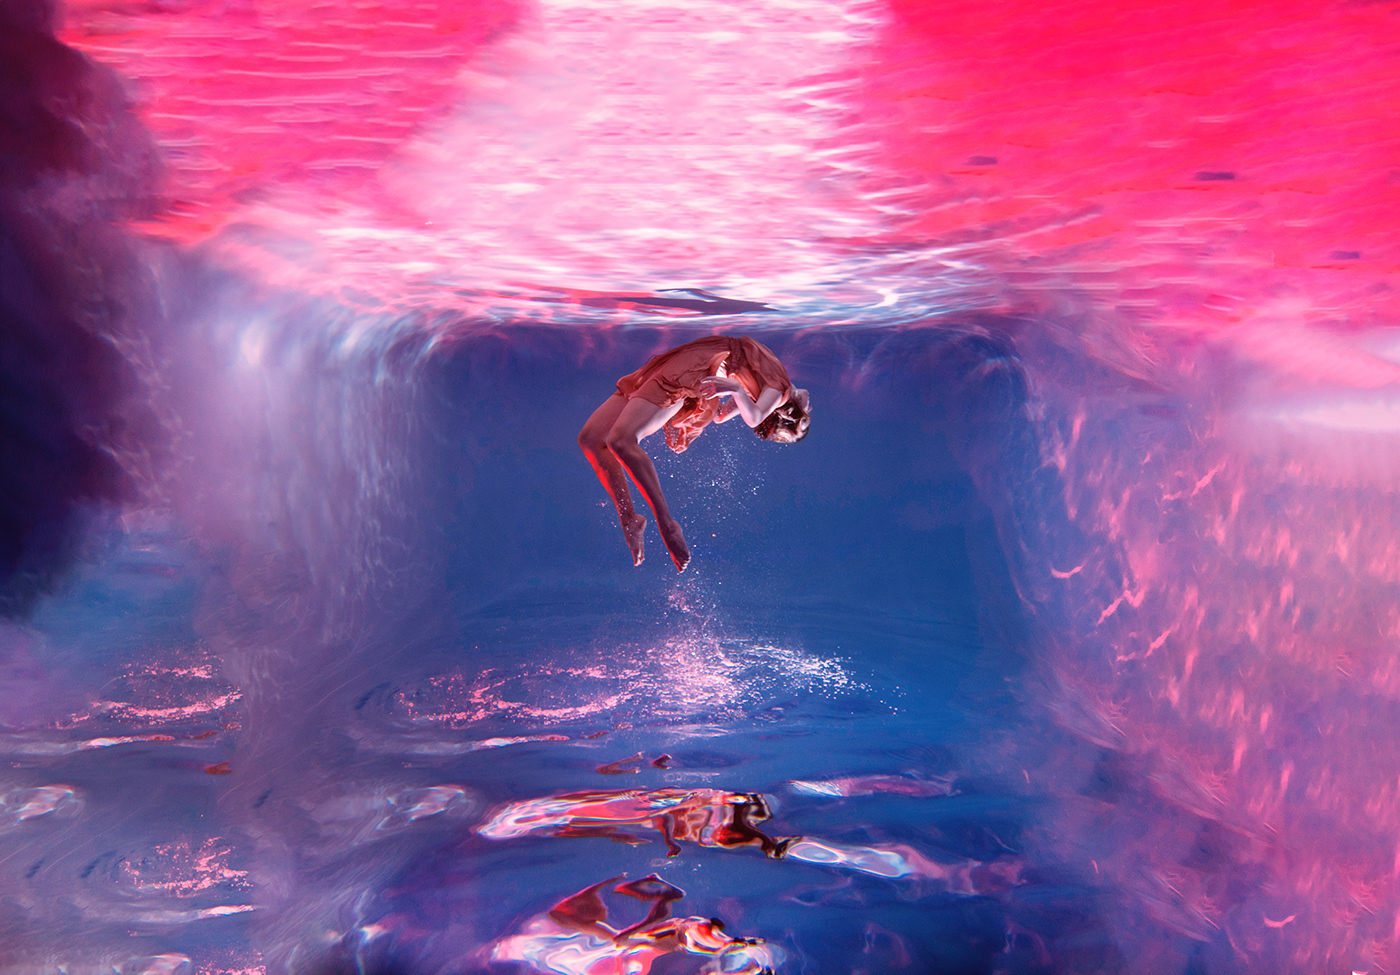 modern Realism rebirth underwater